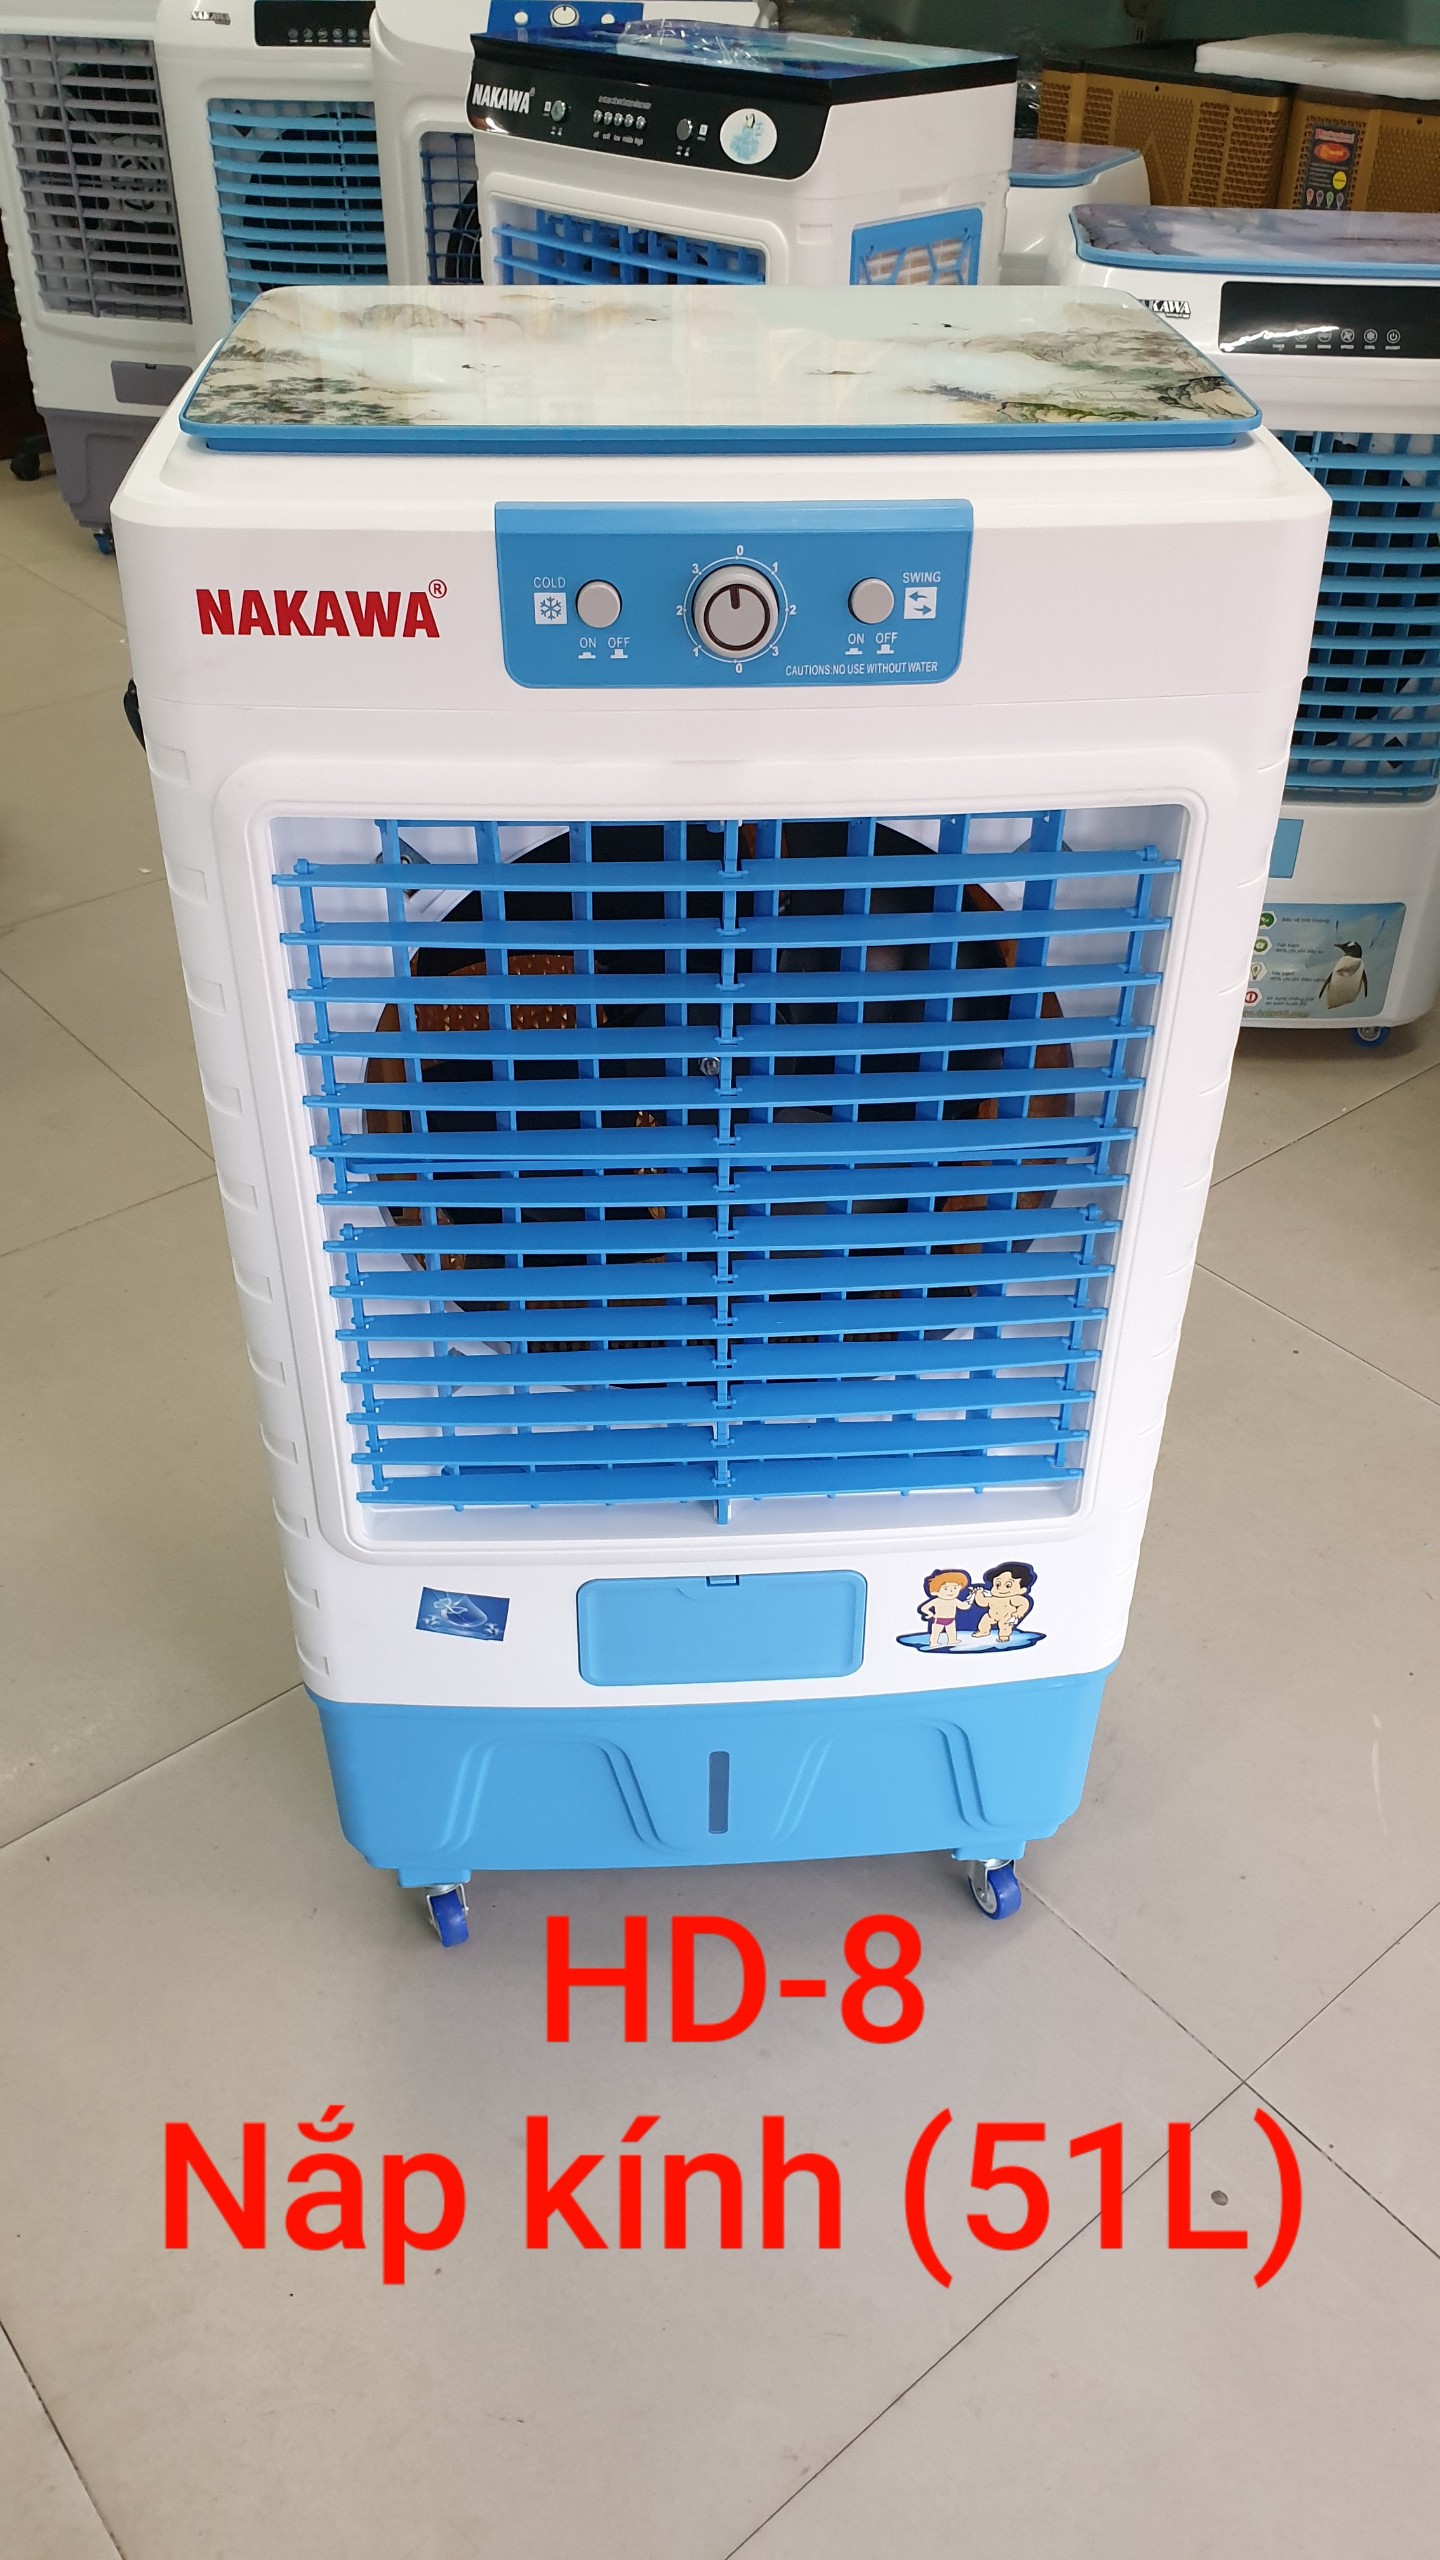 NAKAWA HD-8